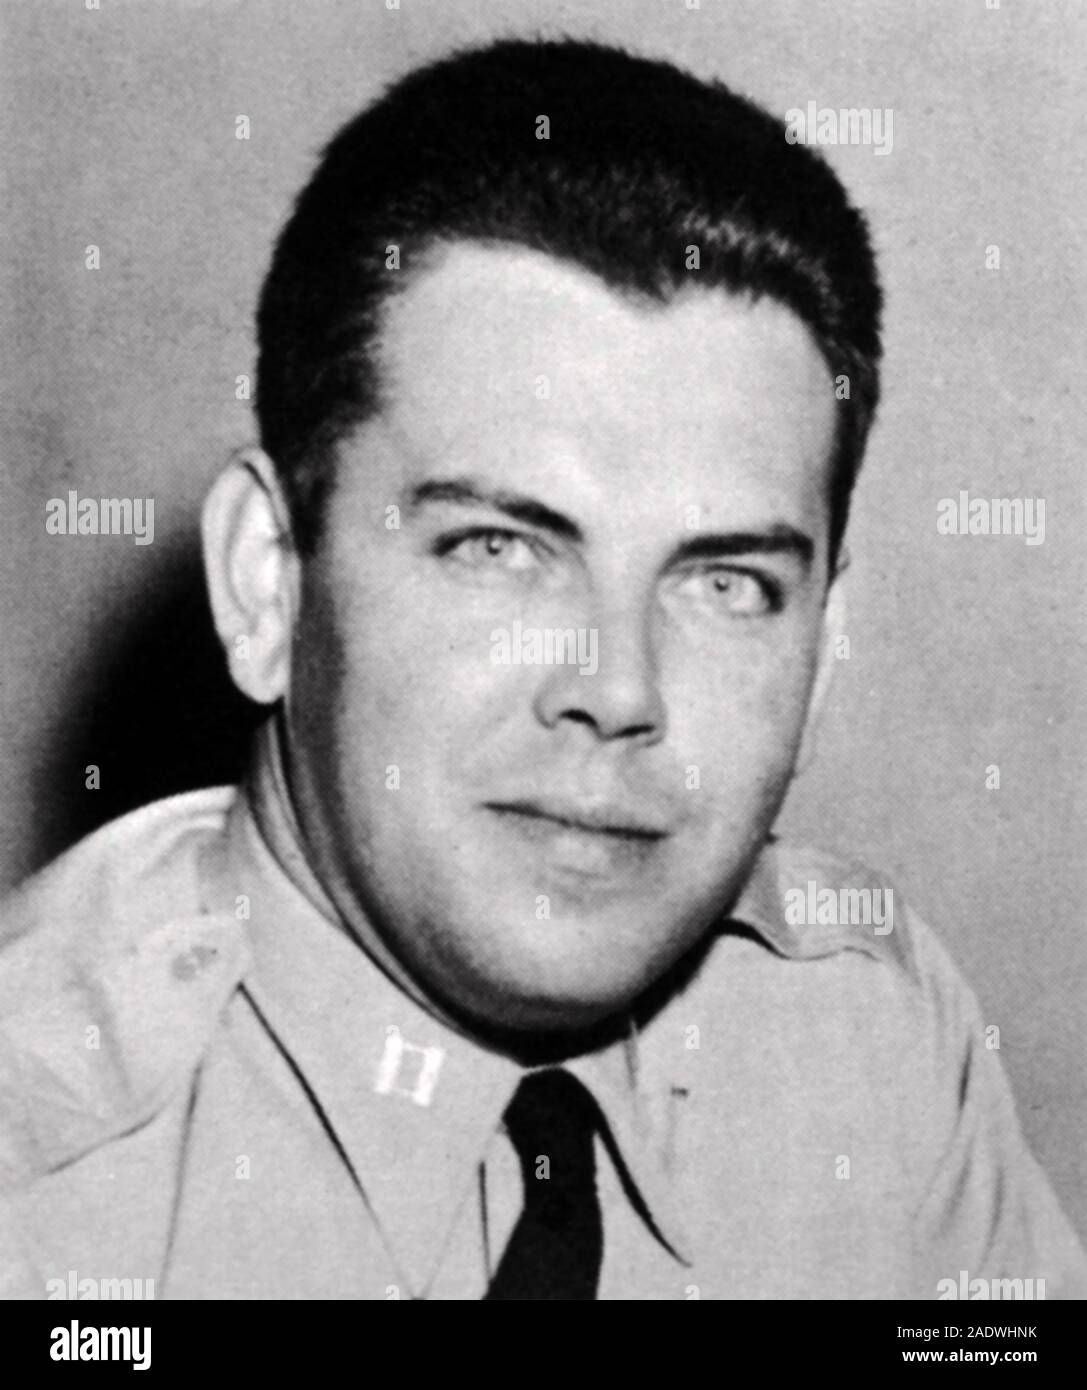 EDWARD J RUPPELT (1923-1960) die amerikanische Luftwaffe Offizier in das Projekt Blue Book US-Studie von UFOs. Stockfoto